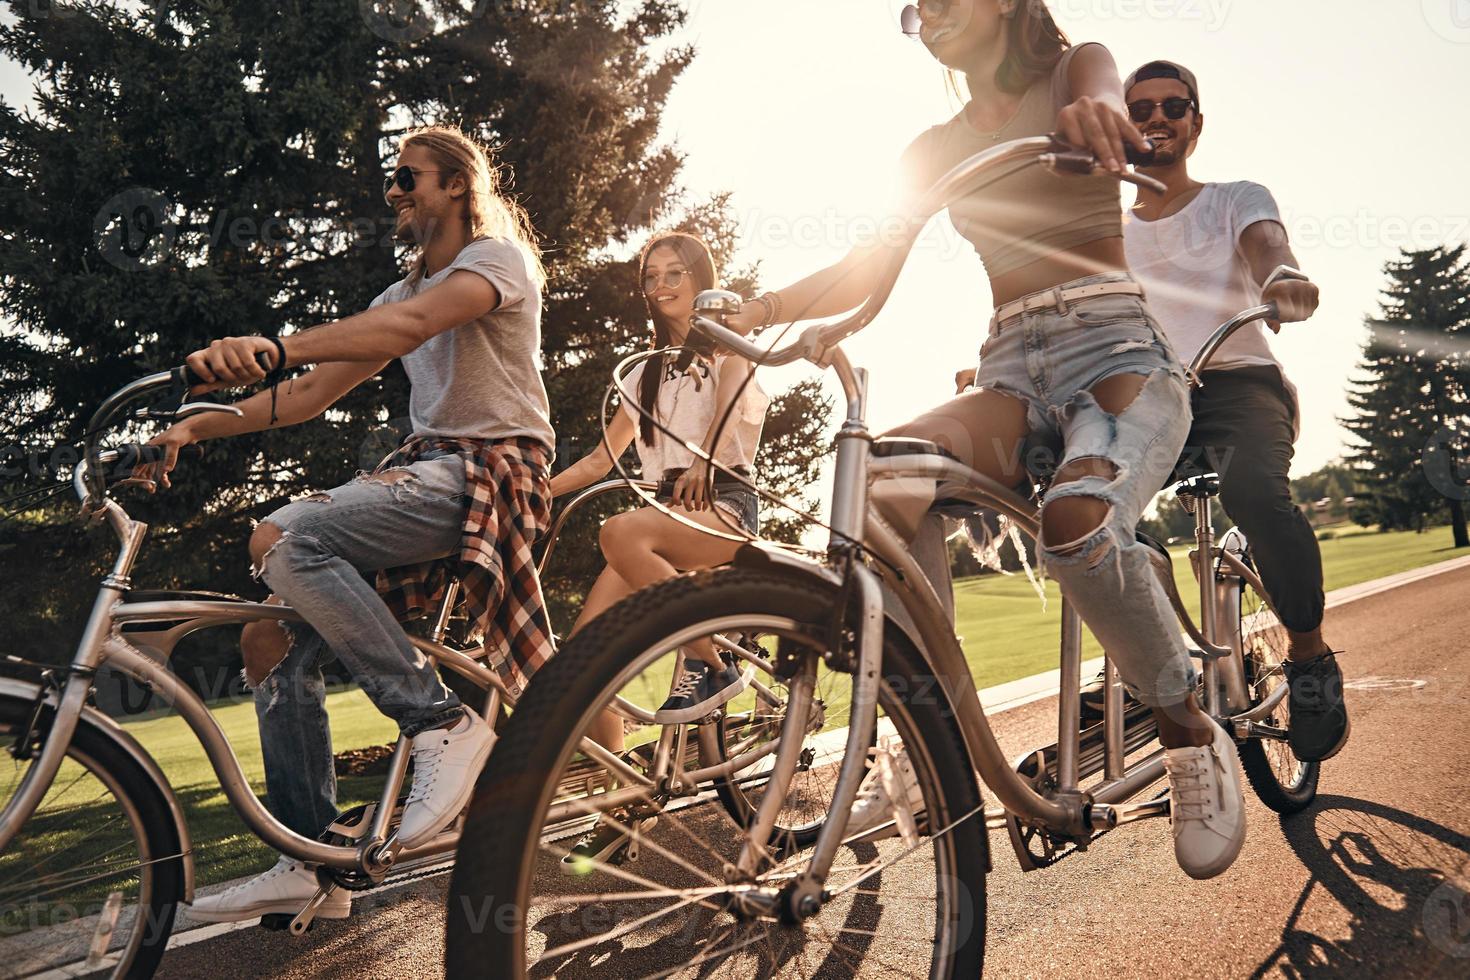 cálido sol y una gran compañía. grupo de jóvenes felices con ropa informal sonriendo mientras andan en bicicleta juntos al aire libre foto